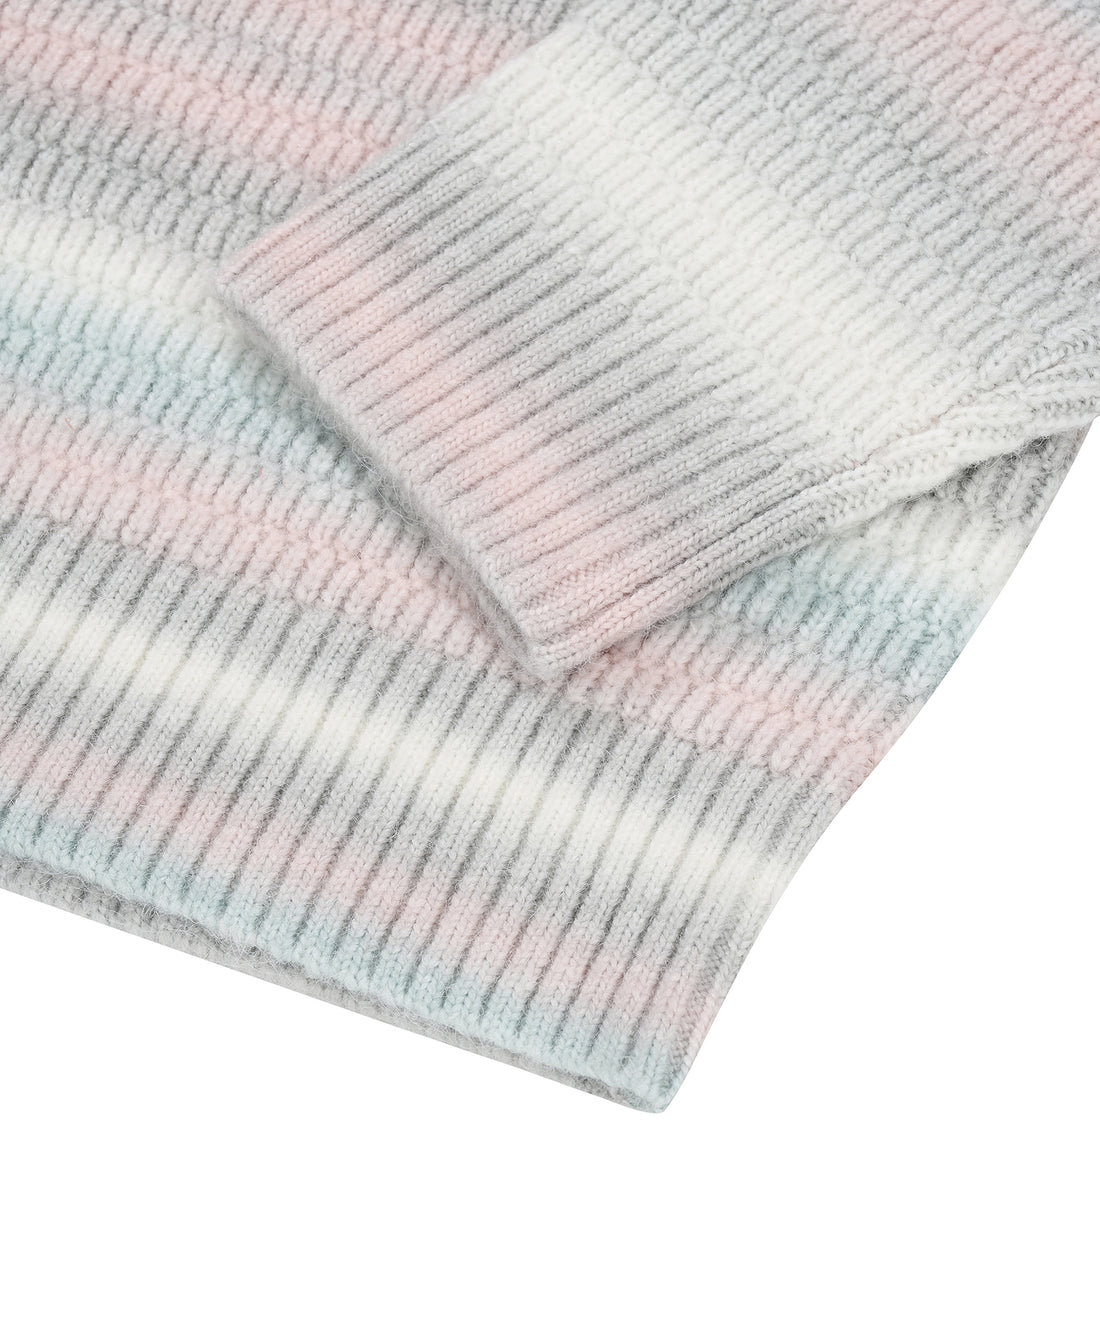 FALLETT Gradient Striped Knit Mint